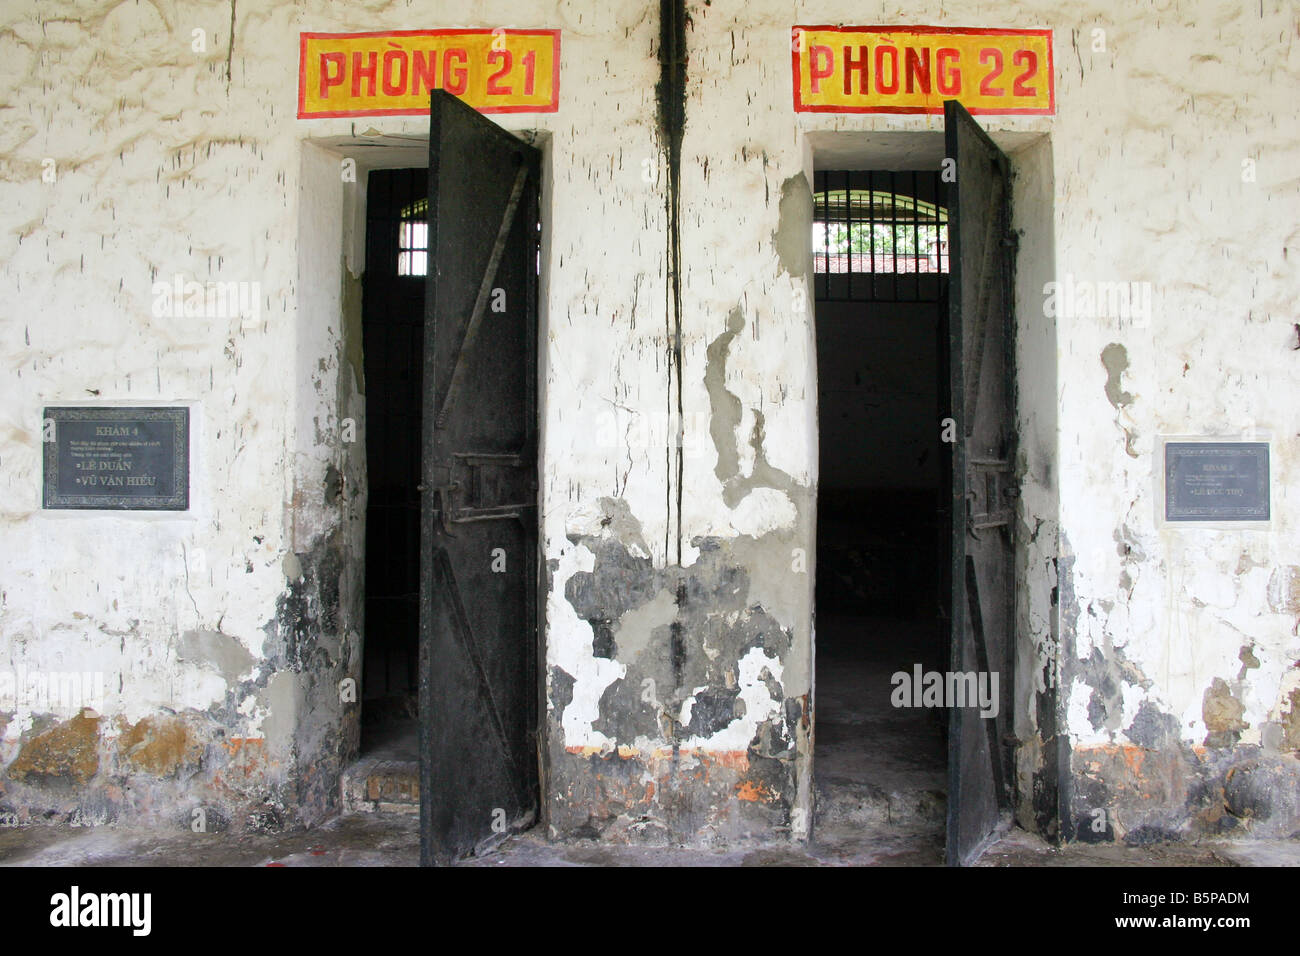 entrance of french convict prison's cell, poulo condor island aka con son, vietnam Stock Photo